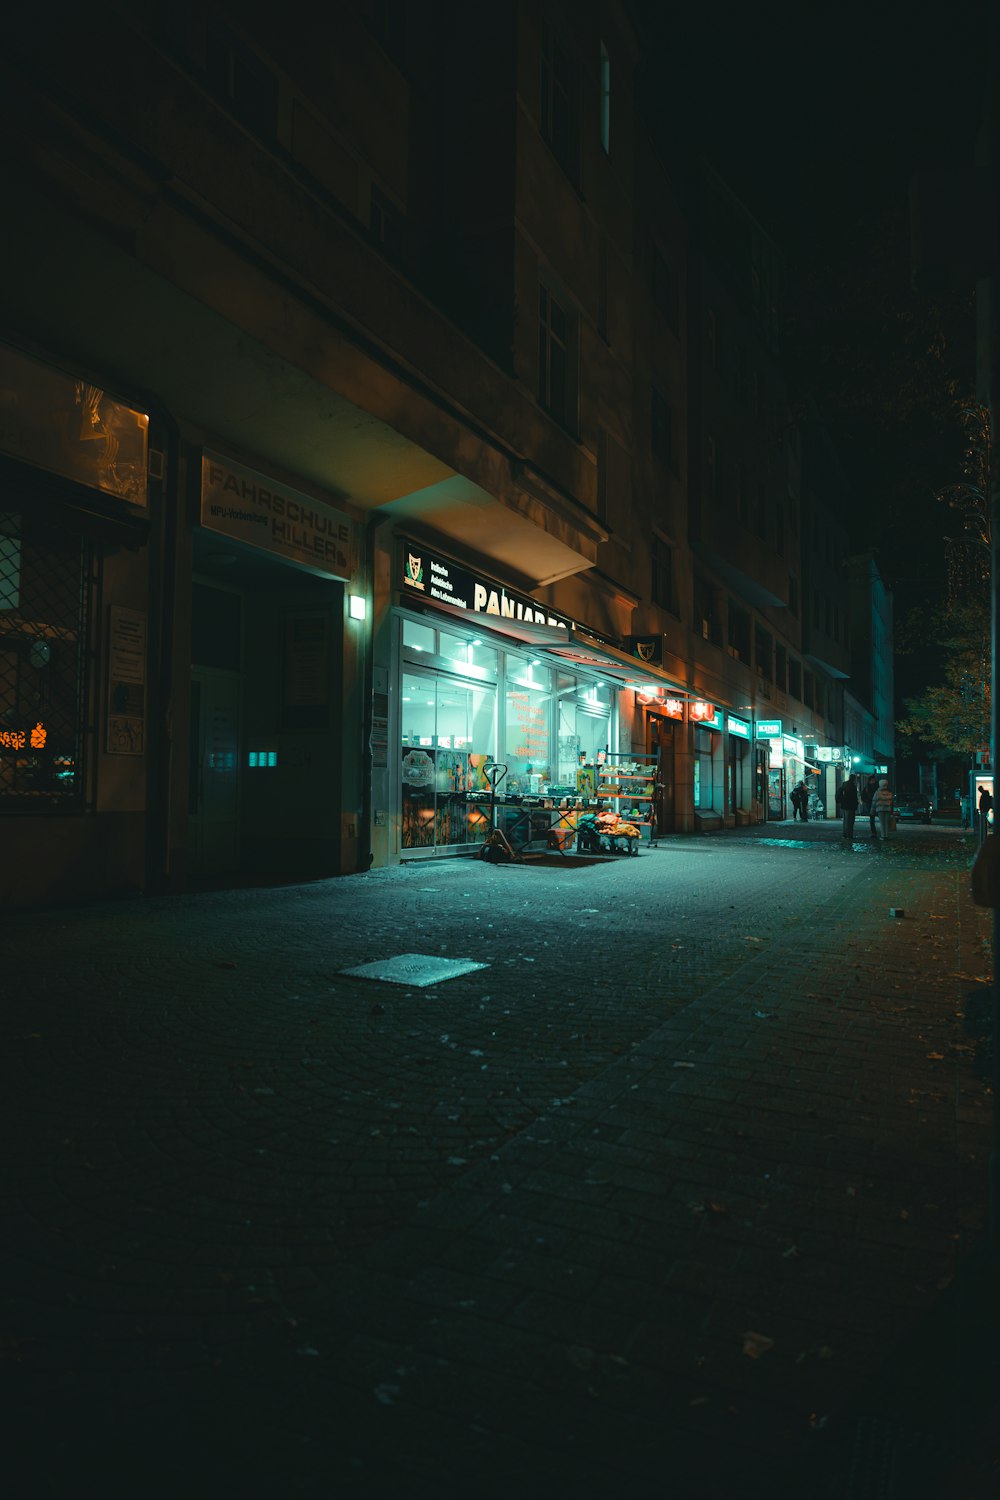 상점 정면에 불이 켜진 밤의 어두운 거리